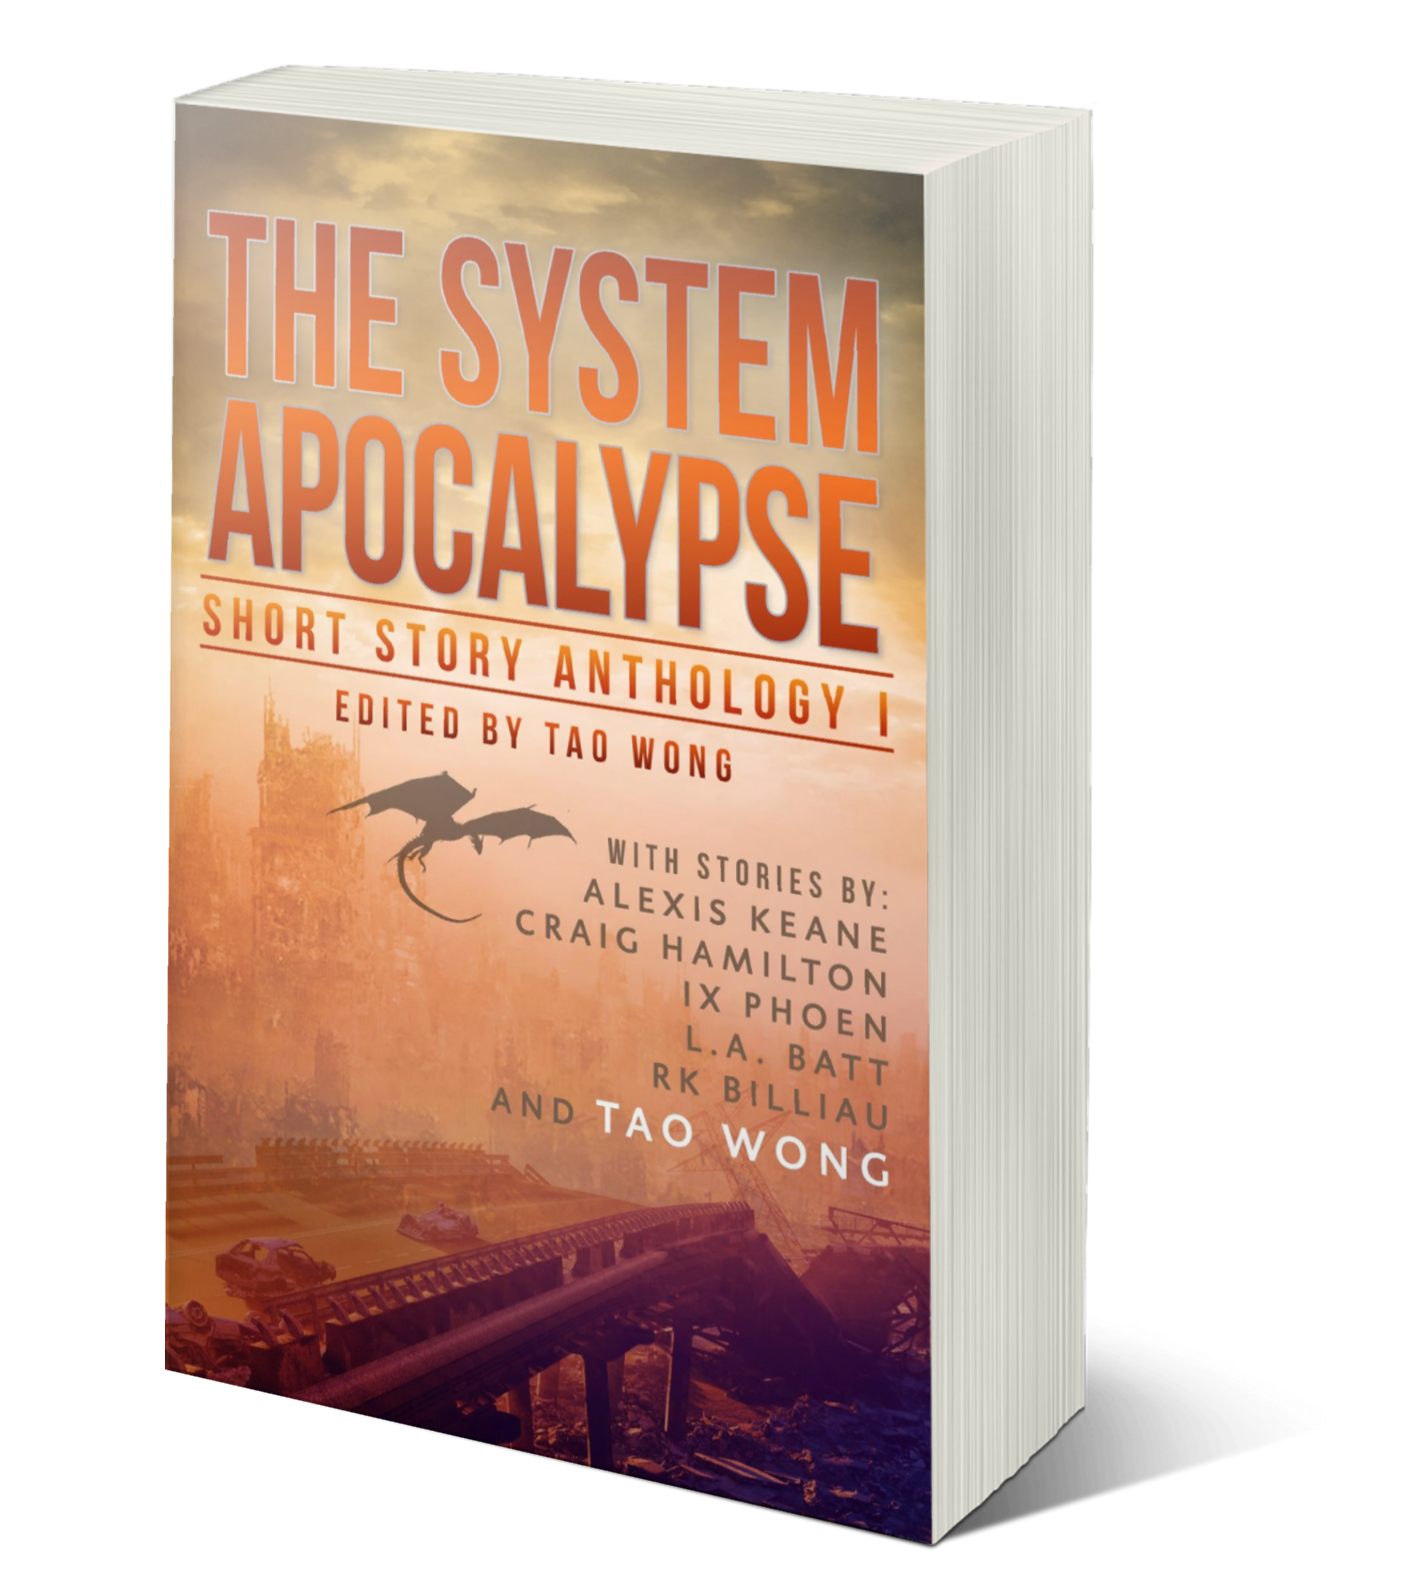 The System Apocalypse: Short Story Anthology I